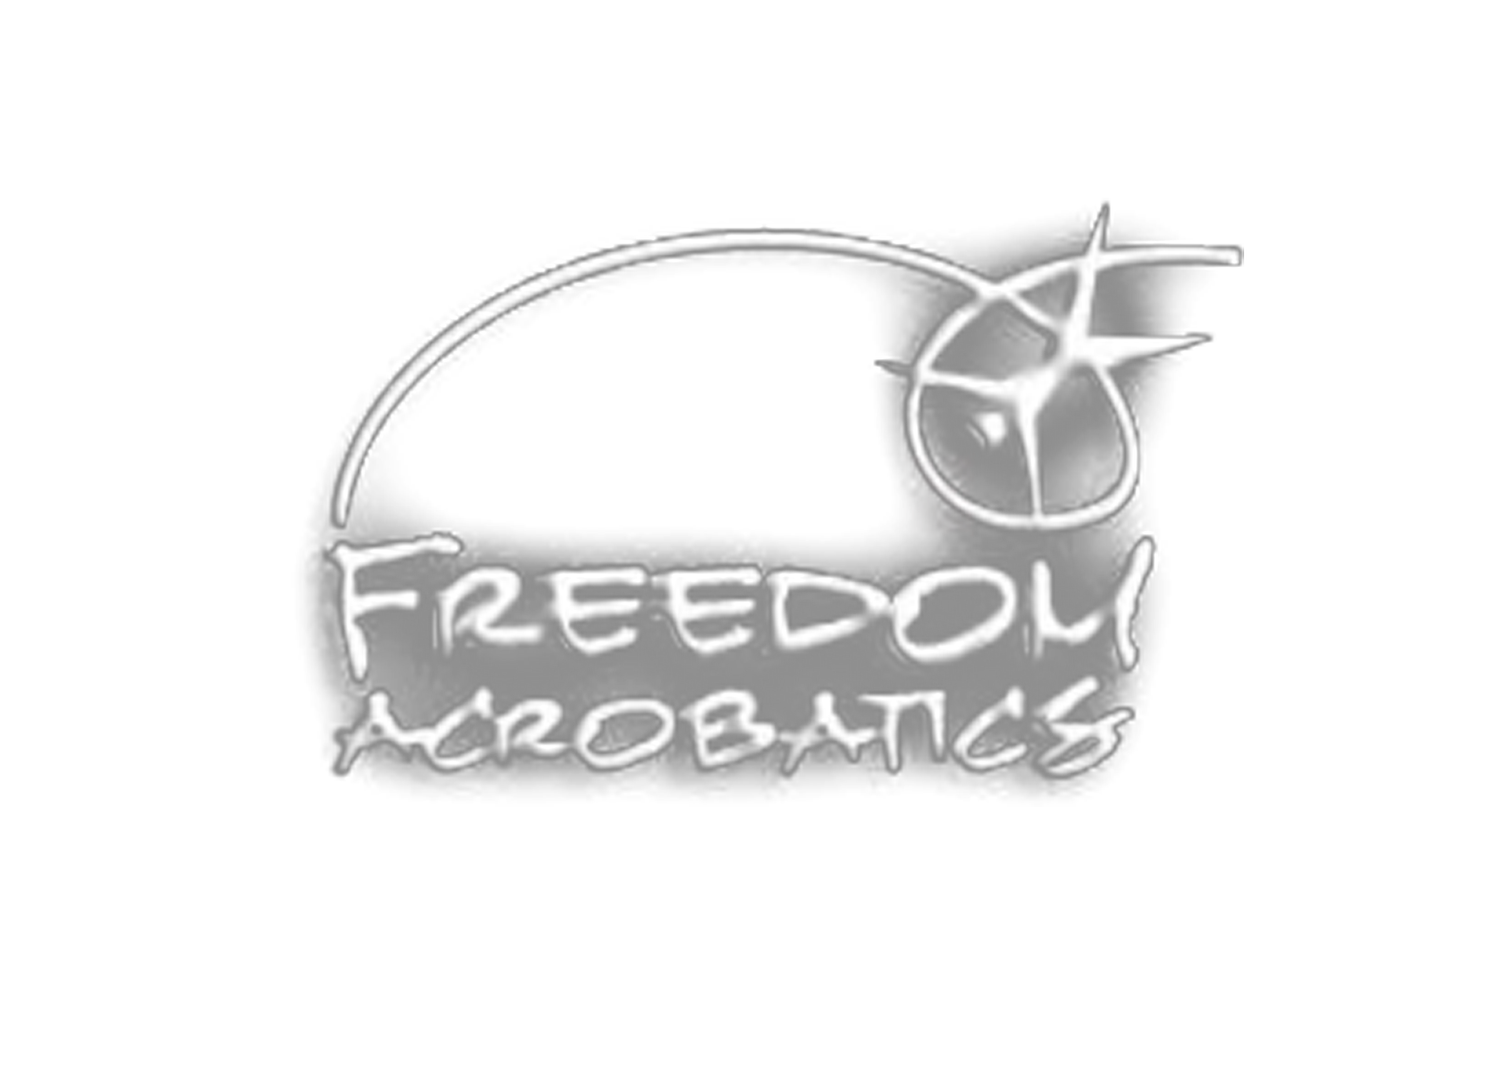 Freedom Acrobatics